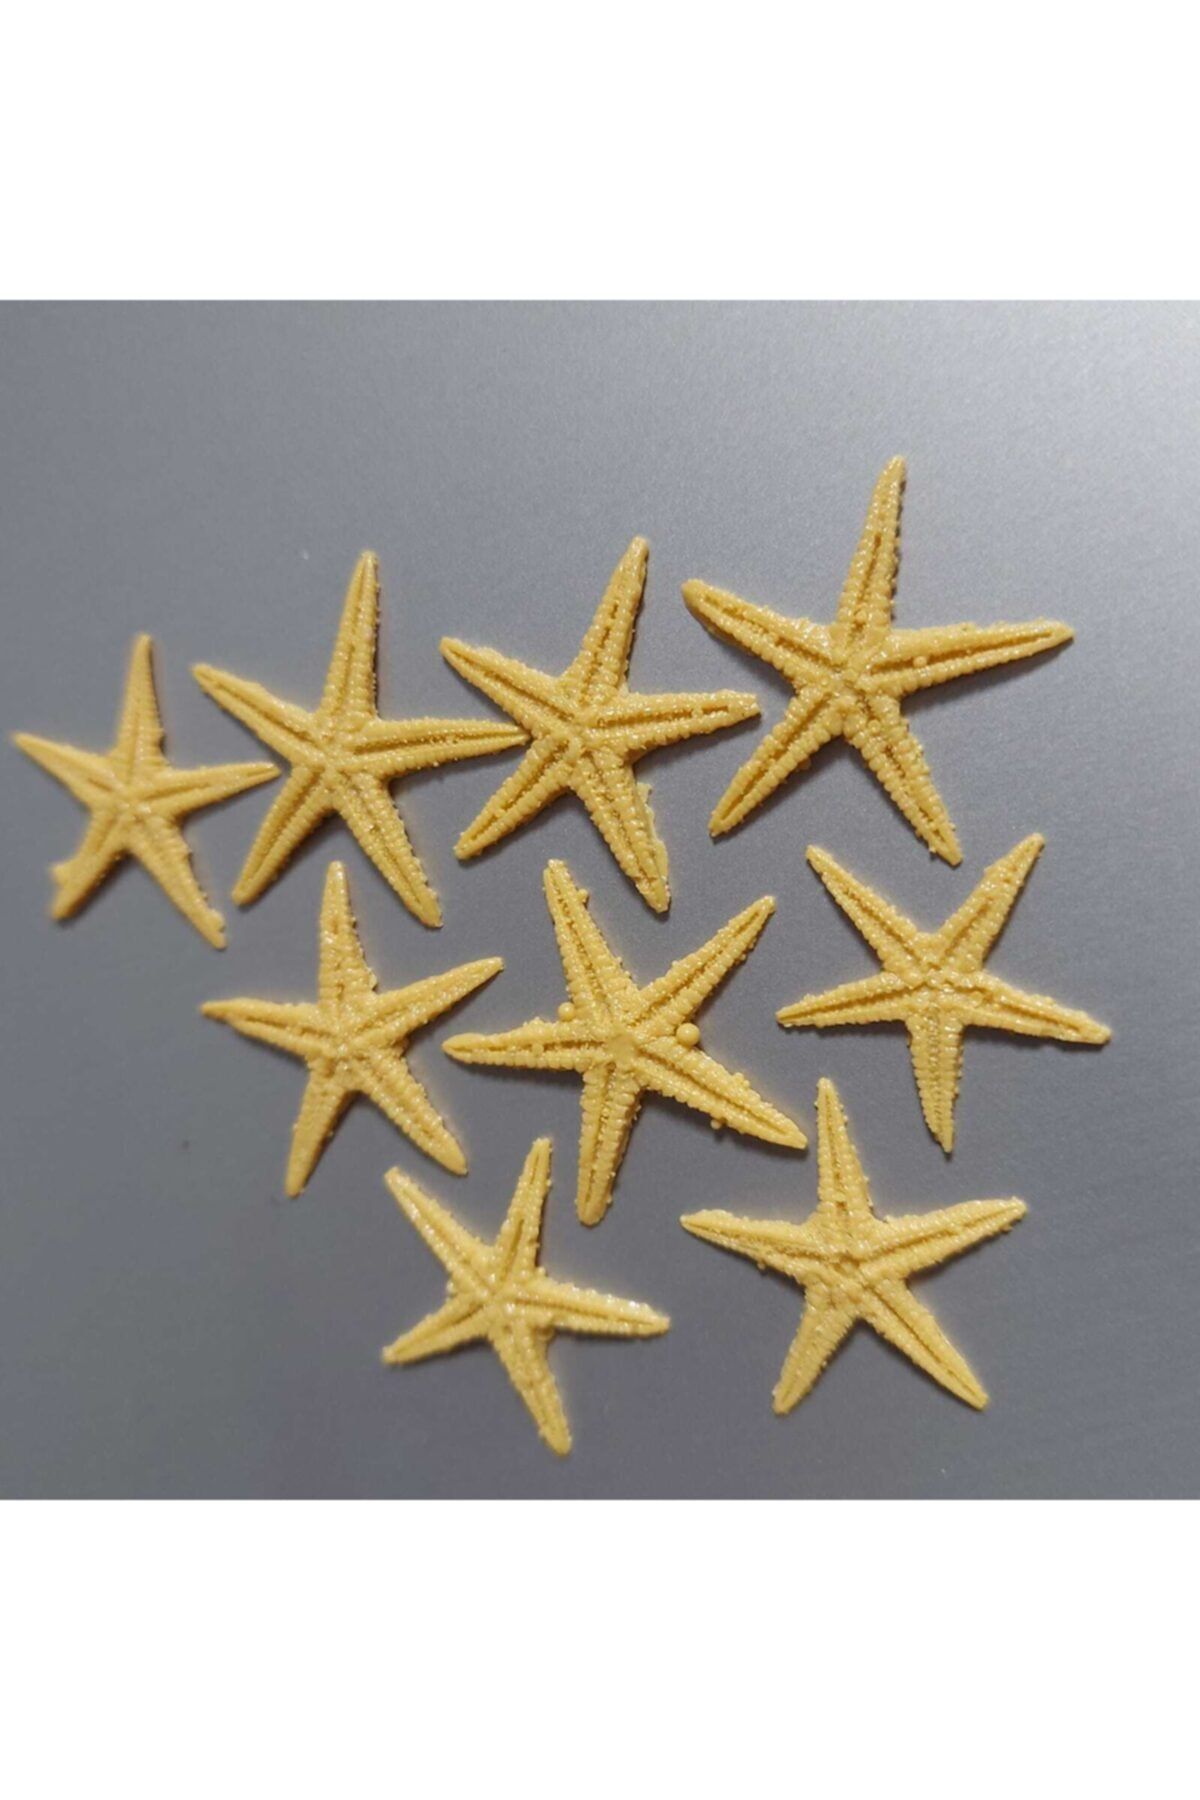 Aker Hediyelik 100lü Minik Deniz Yıldızı 1-2cm Polyester Yıldızlar Teraryum El Işi Süsleme Nikah Şekeri Malzemesi